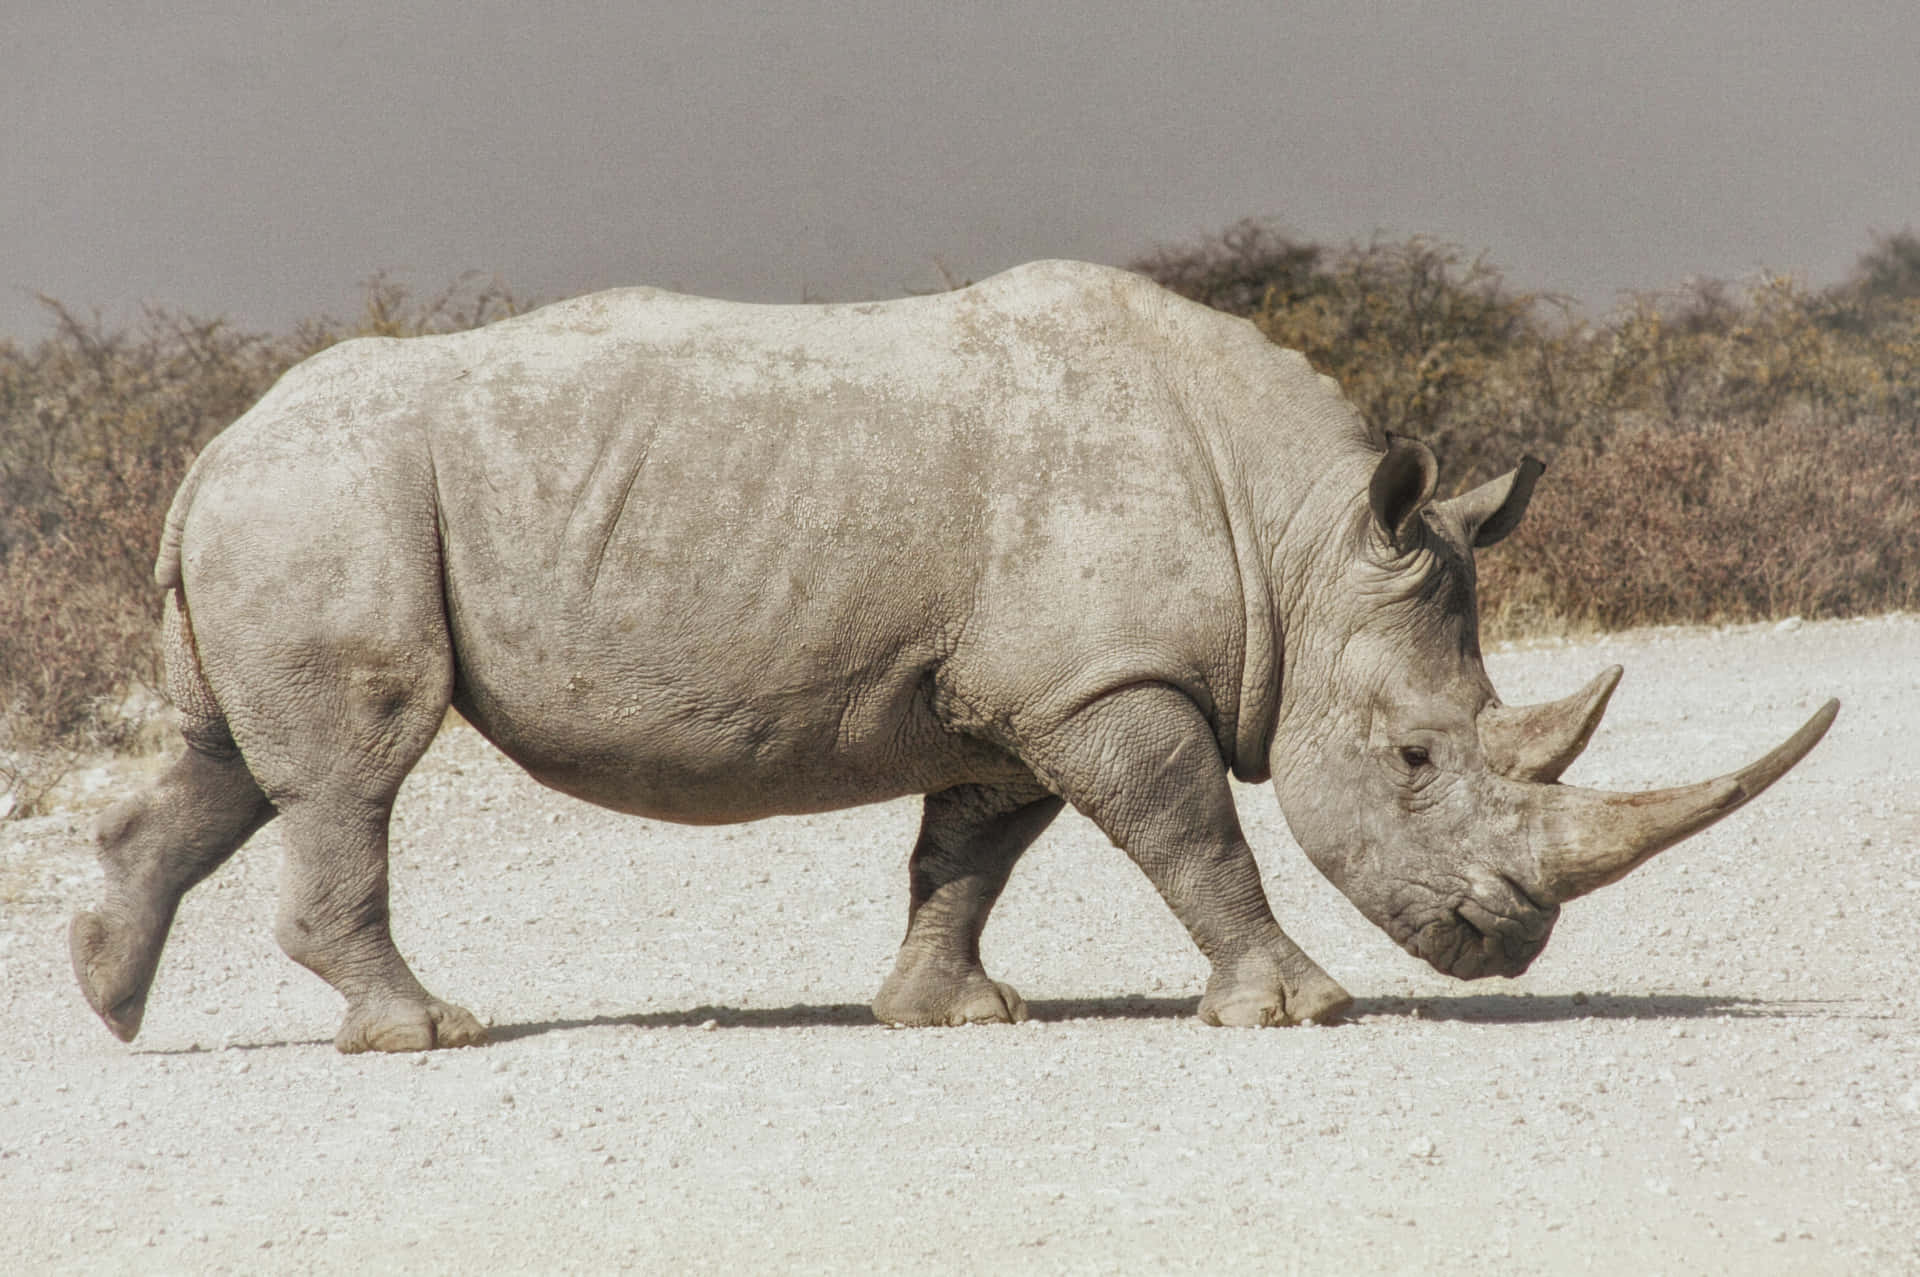 A Rhino Walking On A Dirt Road